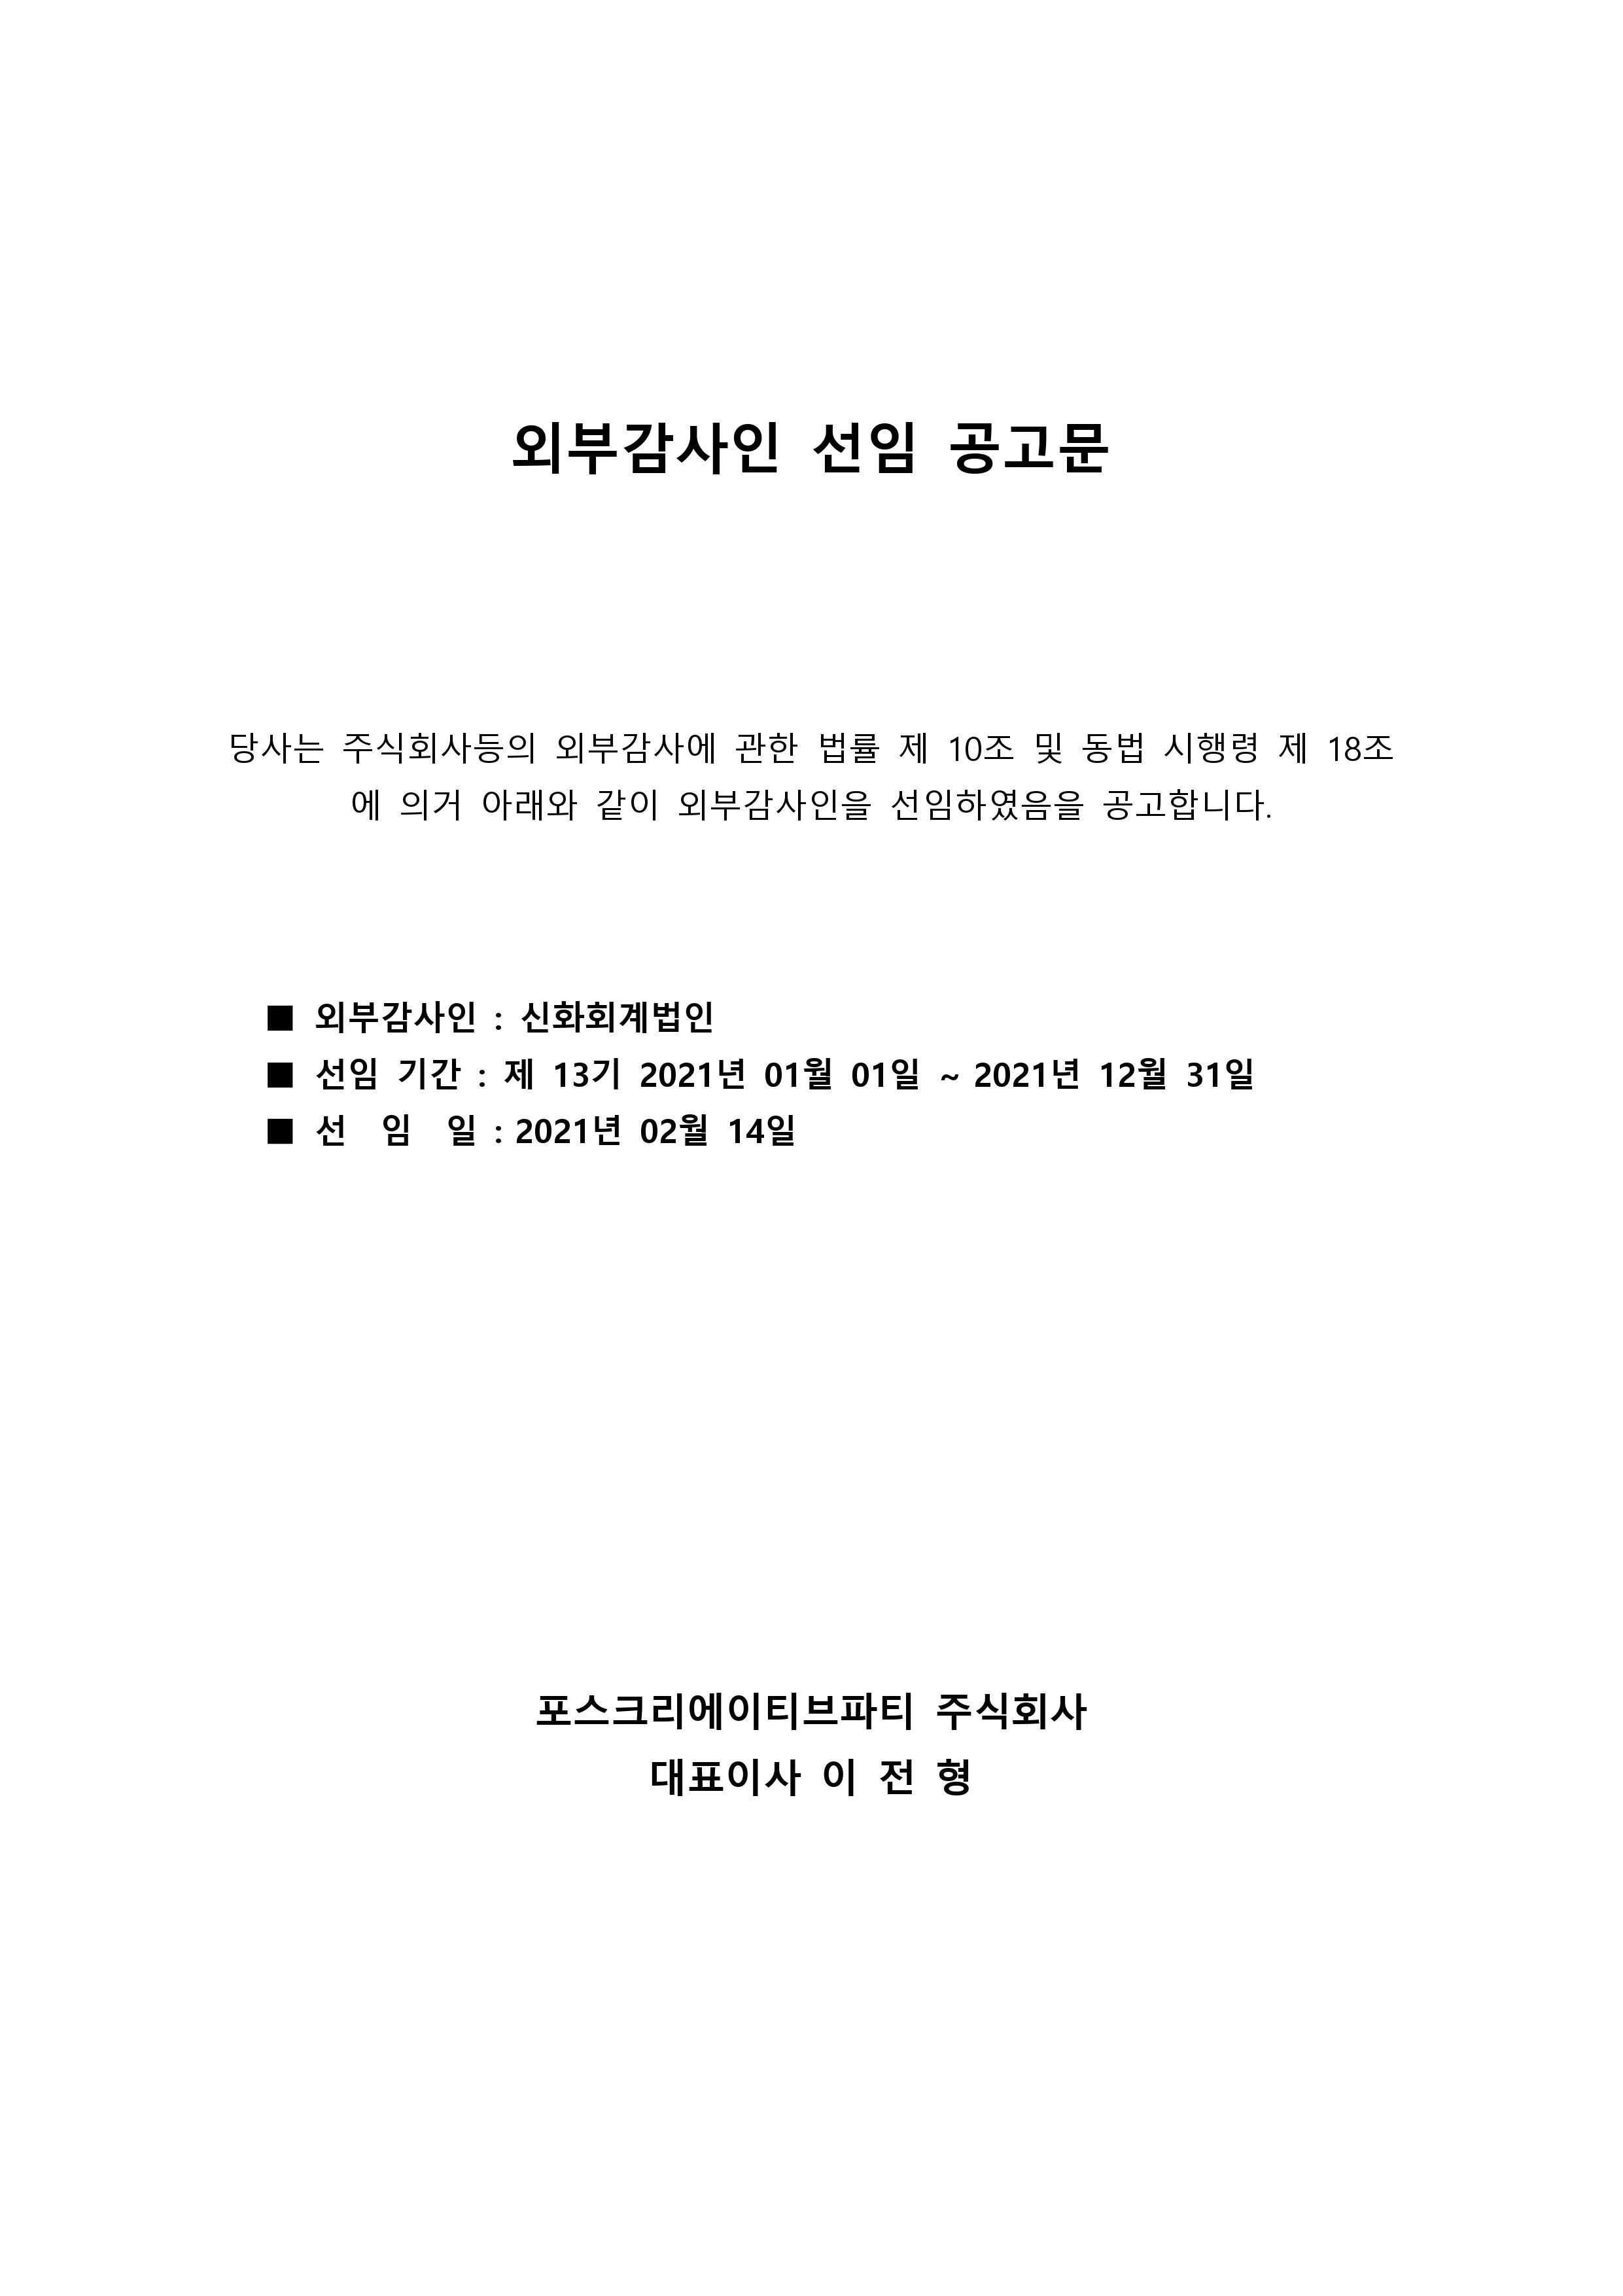 포스_외부감사인 선임 공고문(2021년)_홈페이지 공고